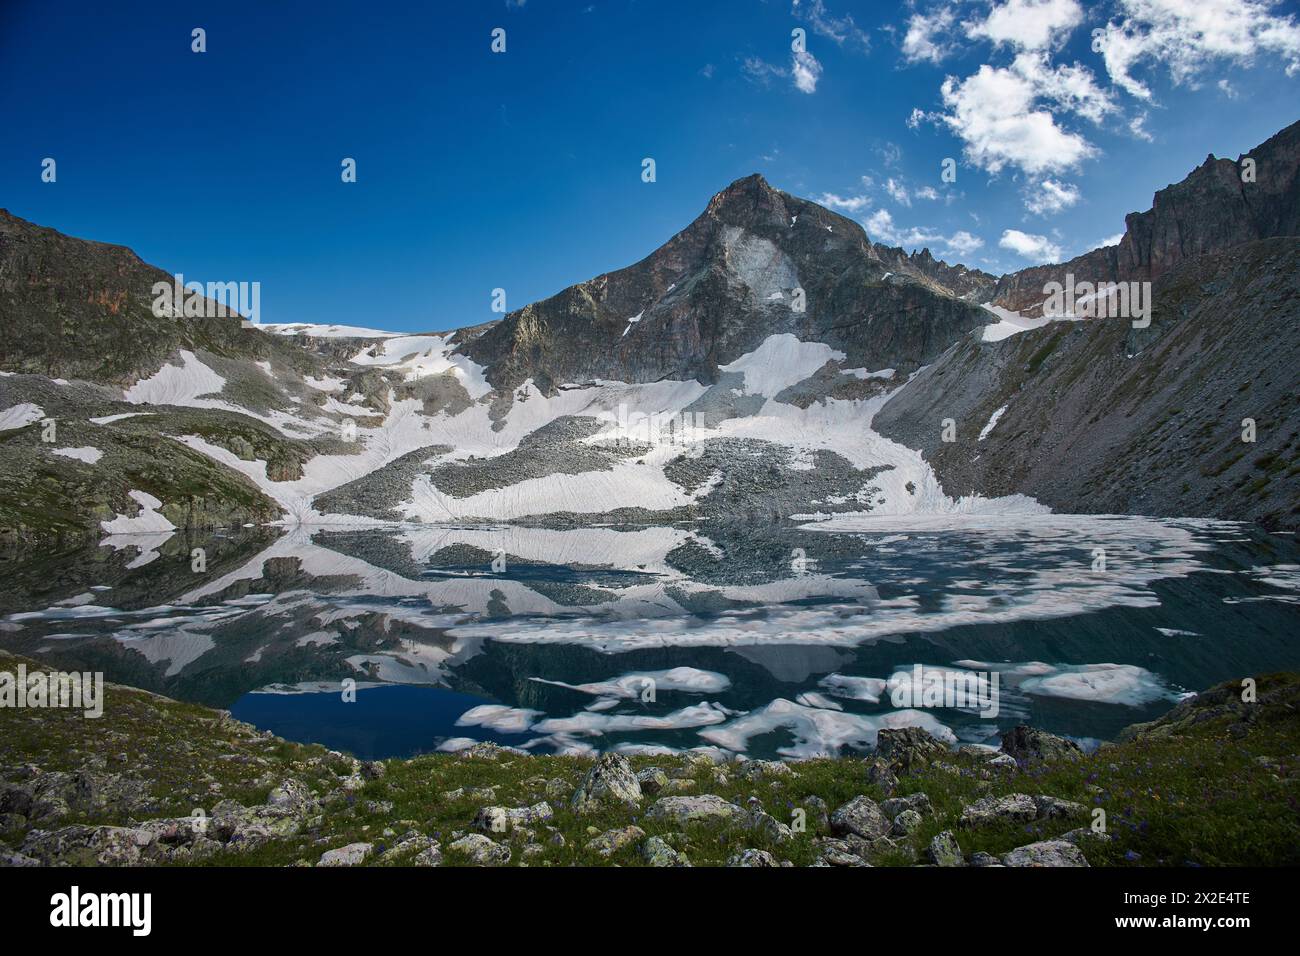 Der See liegt eingebettet in schneebedeckte Berge unter einem klaren blauen Himmel Stockfoto